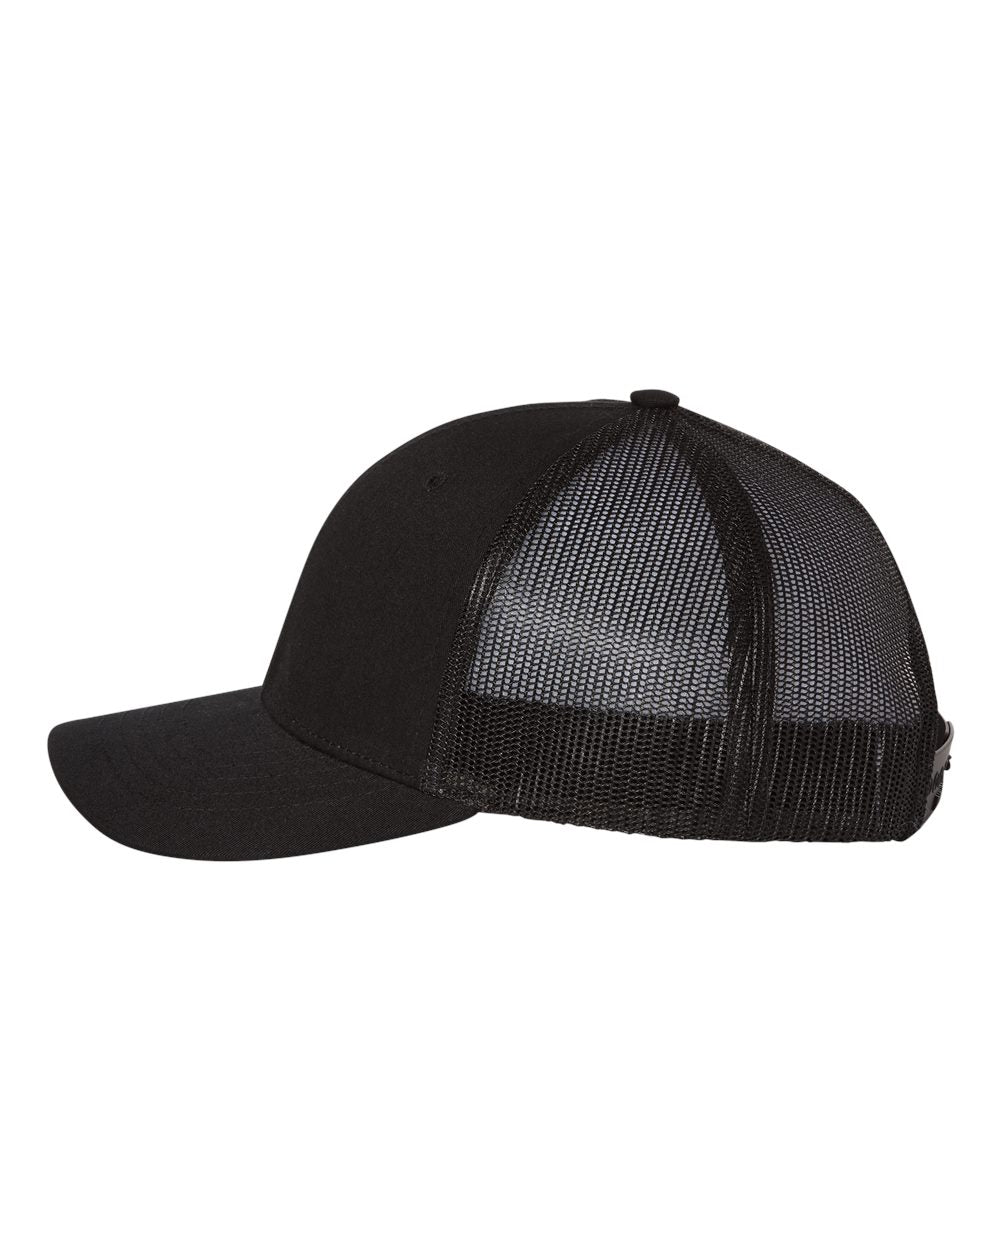 Richardson Youth Customized Trucker Snapback Caps, Black